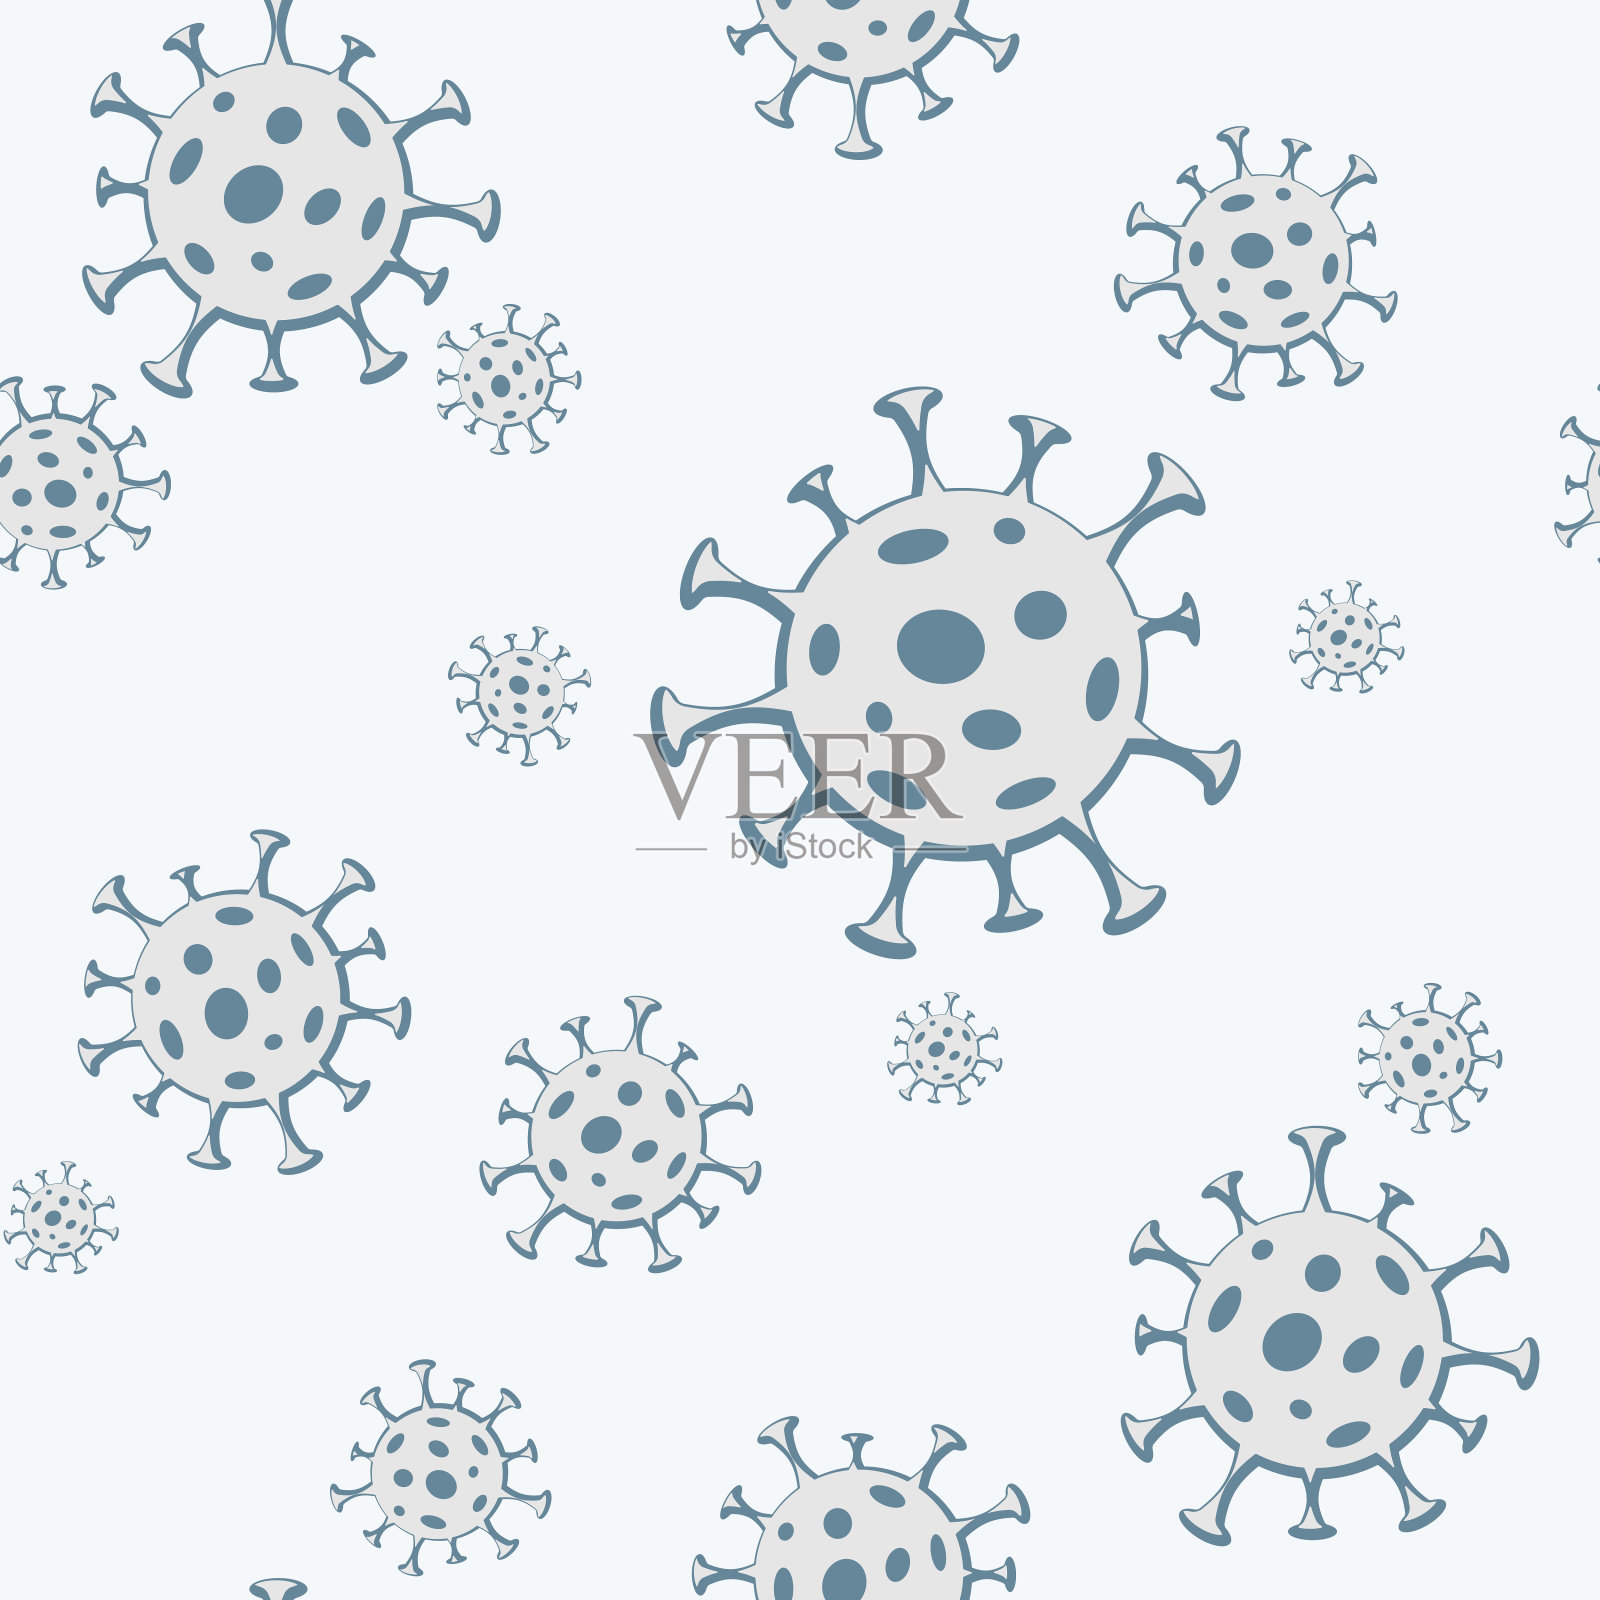 细菌病毒微生物微生物在蓝色背景无缝模式医学背景网站壁纸与病毒细菌微生物科学和健康主题冠状病毒载体模式插画图片素材